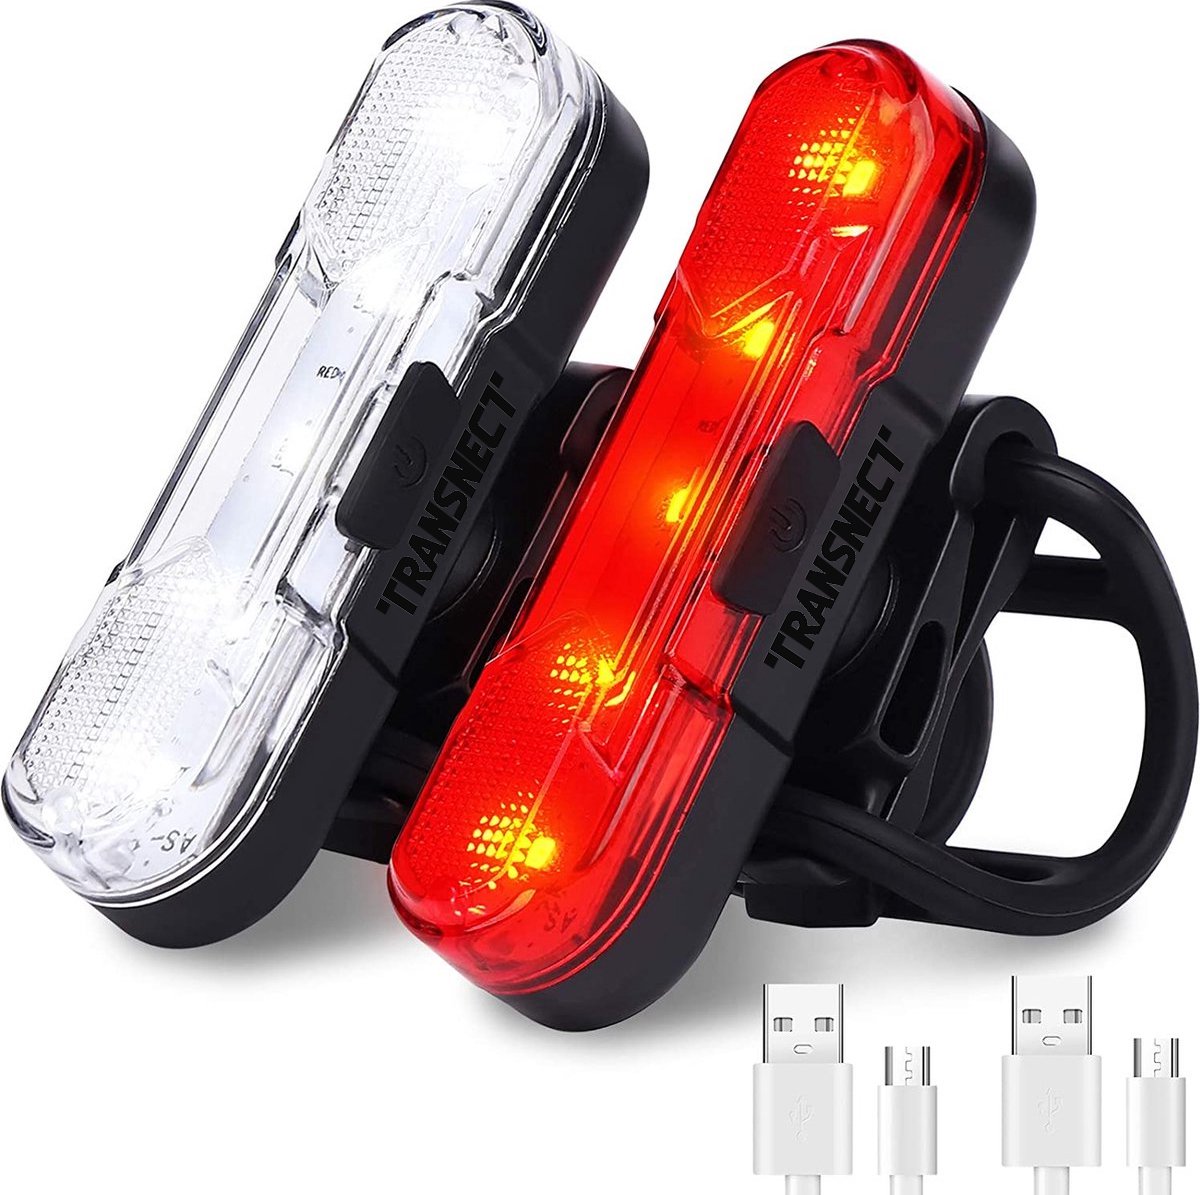 Transnect® – Fietsverlichting LED set - Fietslampjes voor en achter licht - 4 lichtstanden – USB oplaadbaar - Draagbaar – Waterdicht - TRANSNECT